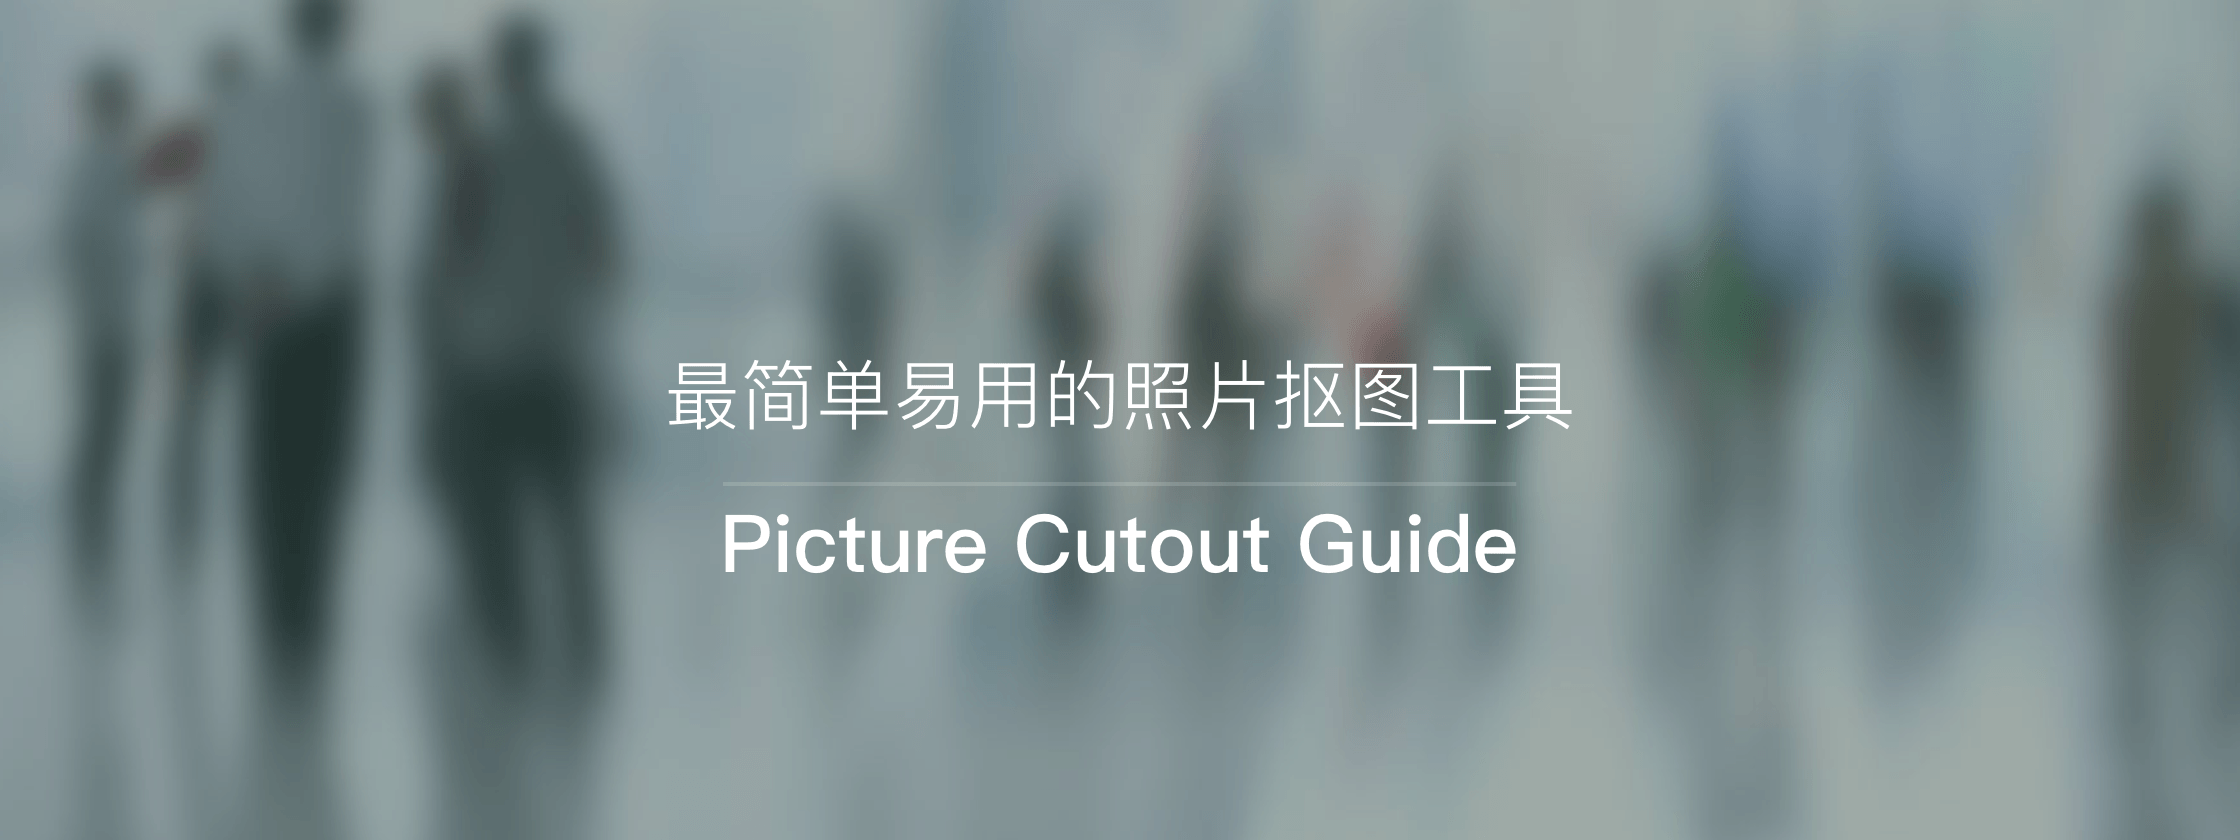 Picture Cutout Guide – 最简单易用的照片抠图工具